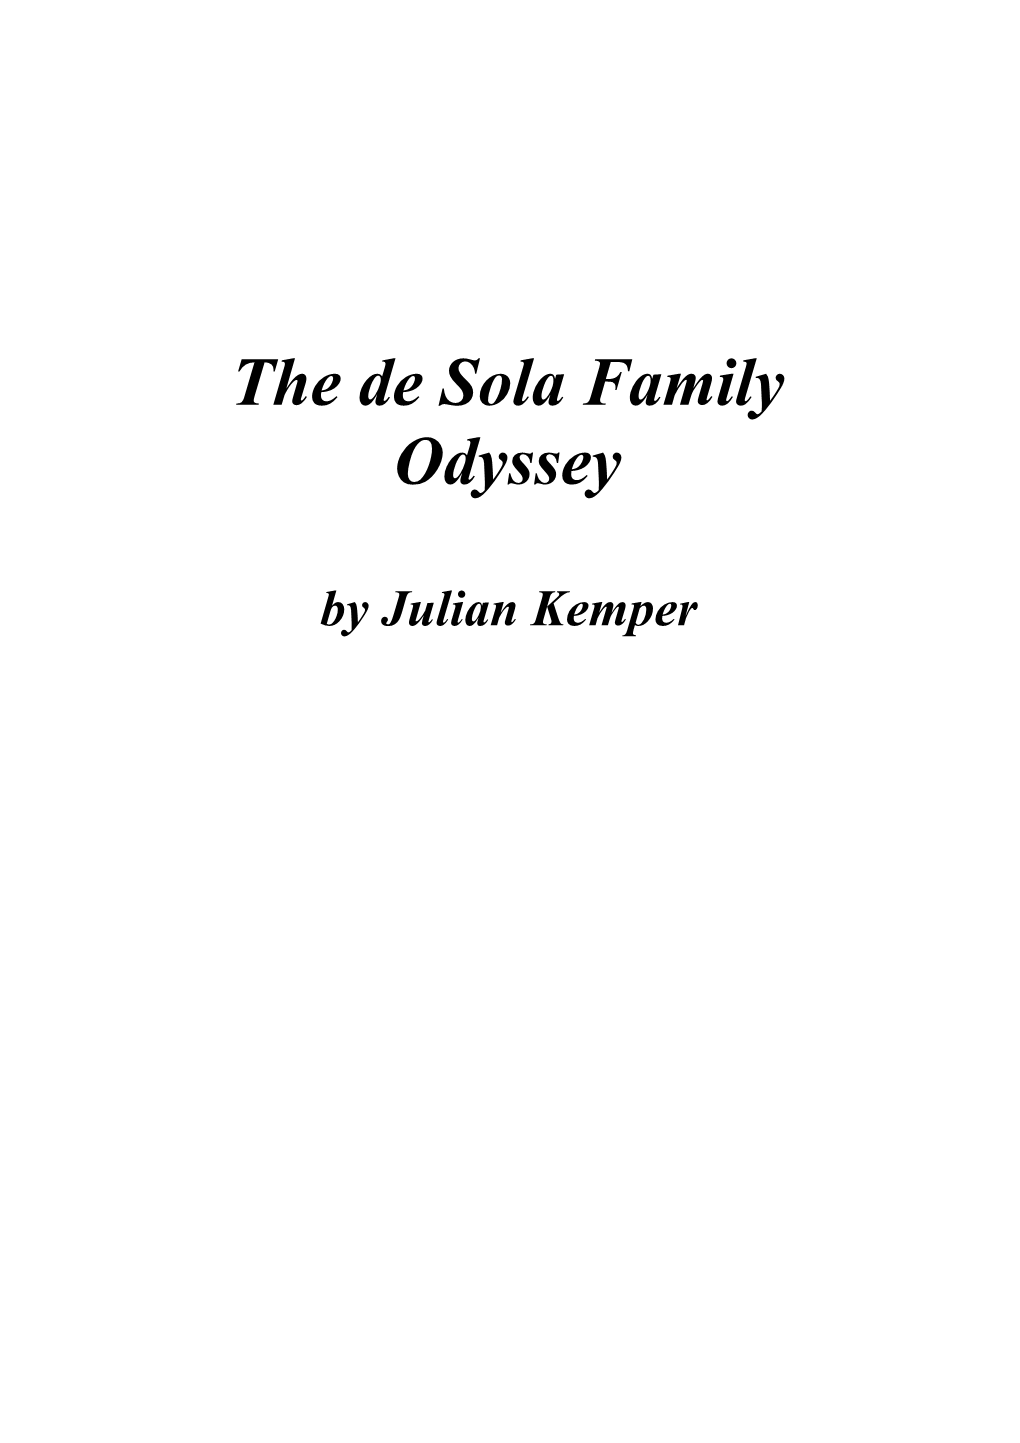 The De Sola Family Odyssey